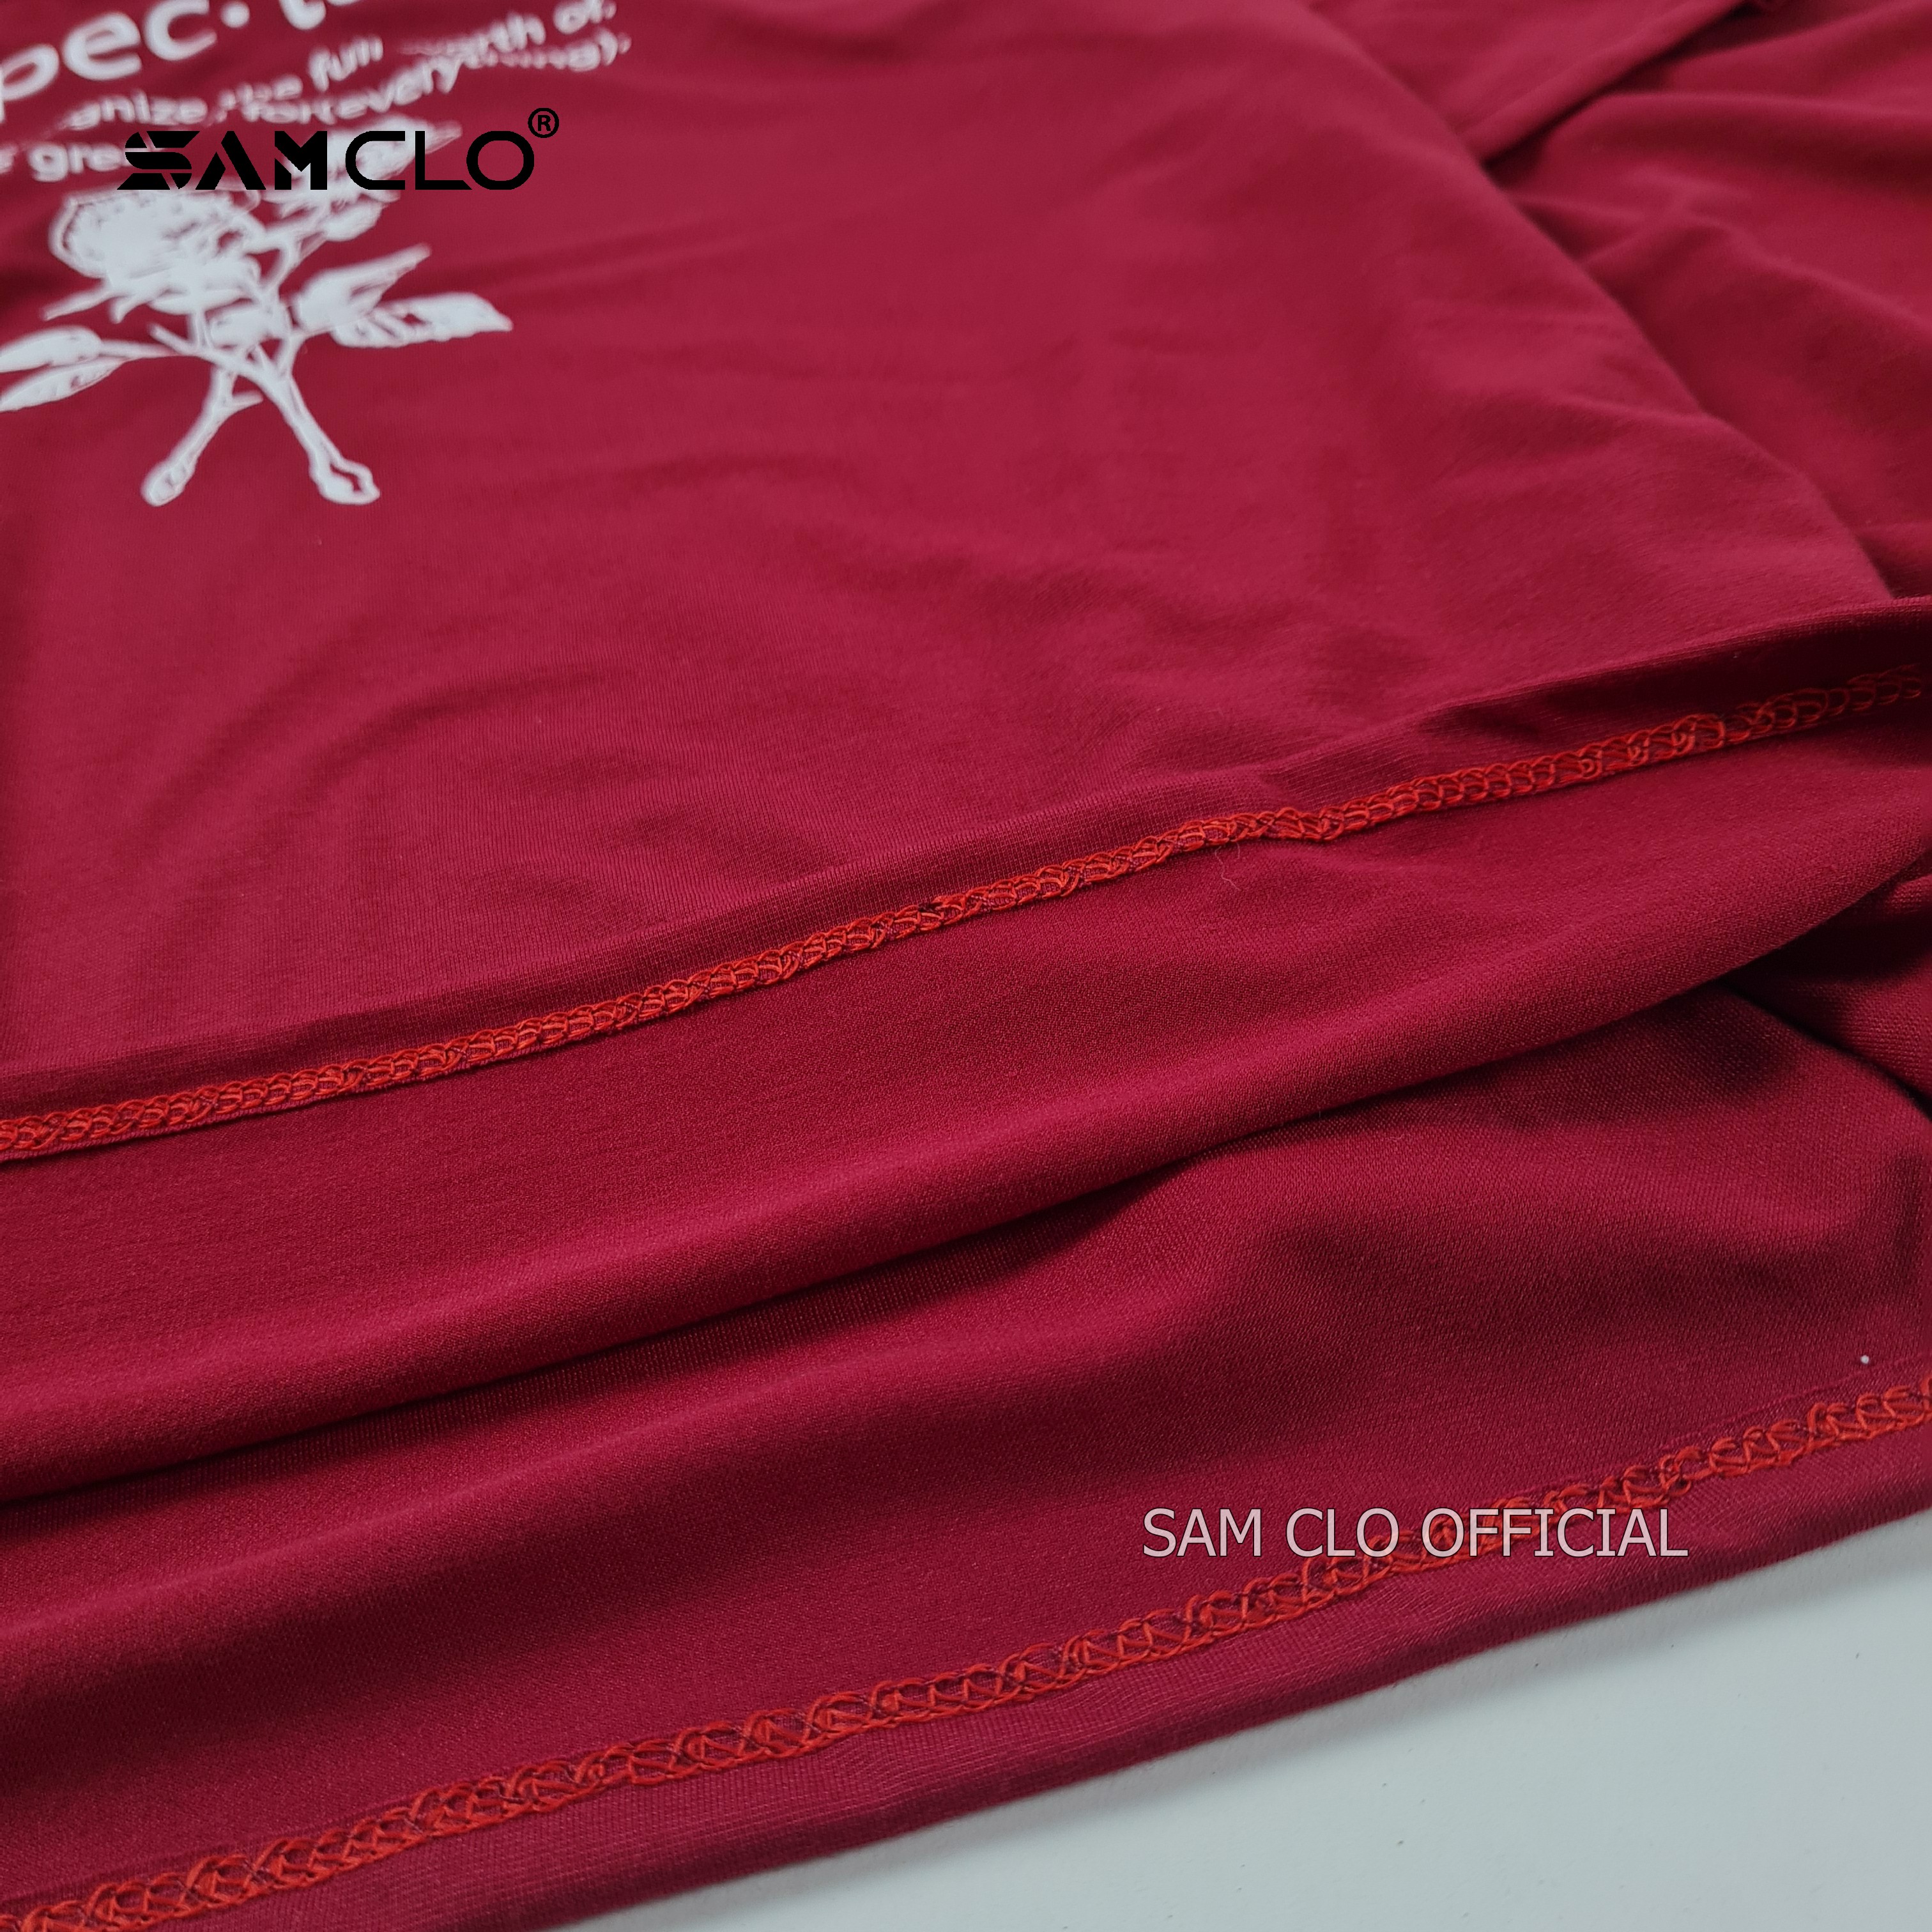 [Hoàn tiền 20%] Áo phông tay lỡ nam nữ SAM CLO form rộng thun Unisex mặc lớp cặp nhóm in hình HOA HỒNG chữ EXPECTATION